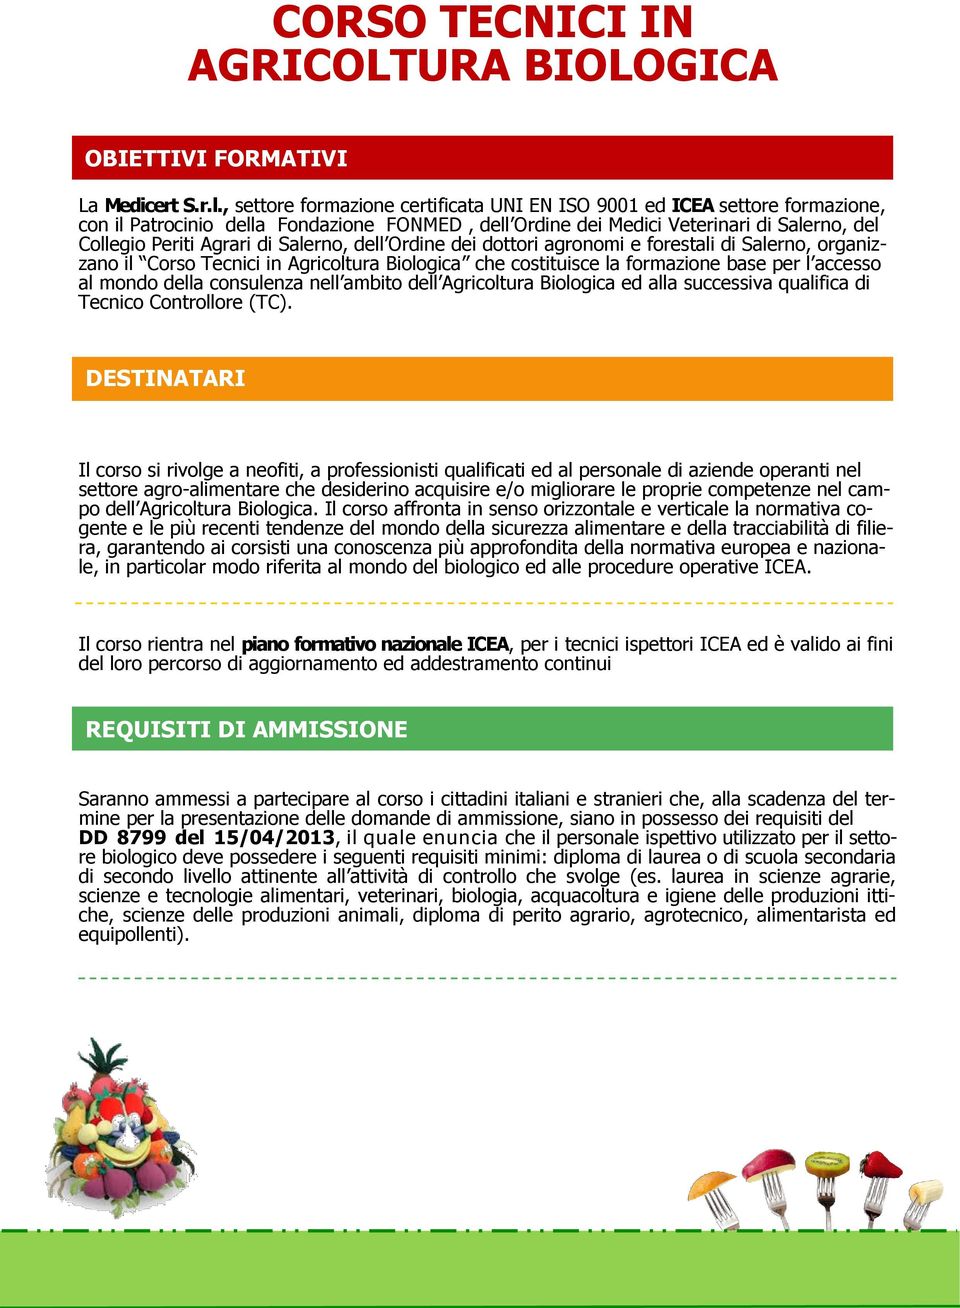 Salerno, dell Ordine dei dottori agronomi e forestali di Salerno, organizzano il Corso Tecnici in Agricoltura Biologica che costituisce la formazione base per l accesso al mondo della consulenza nell